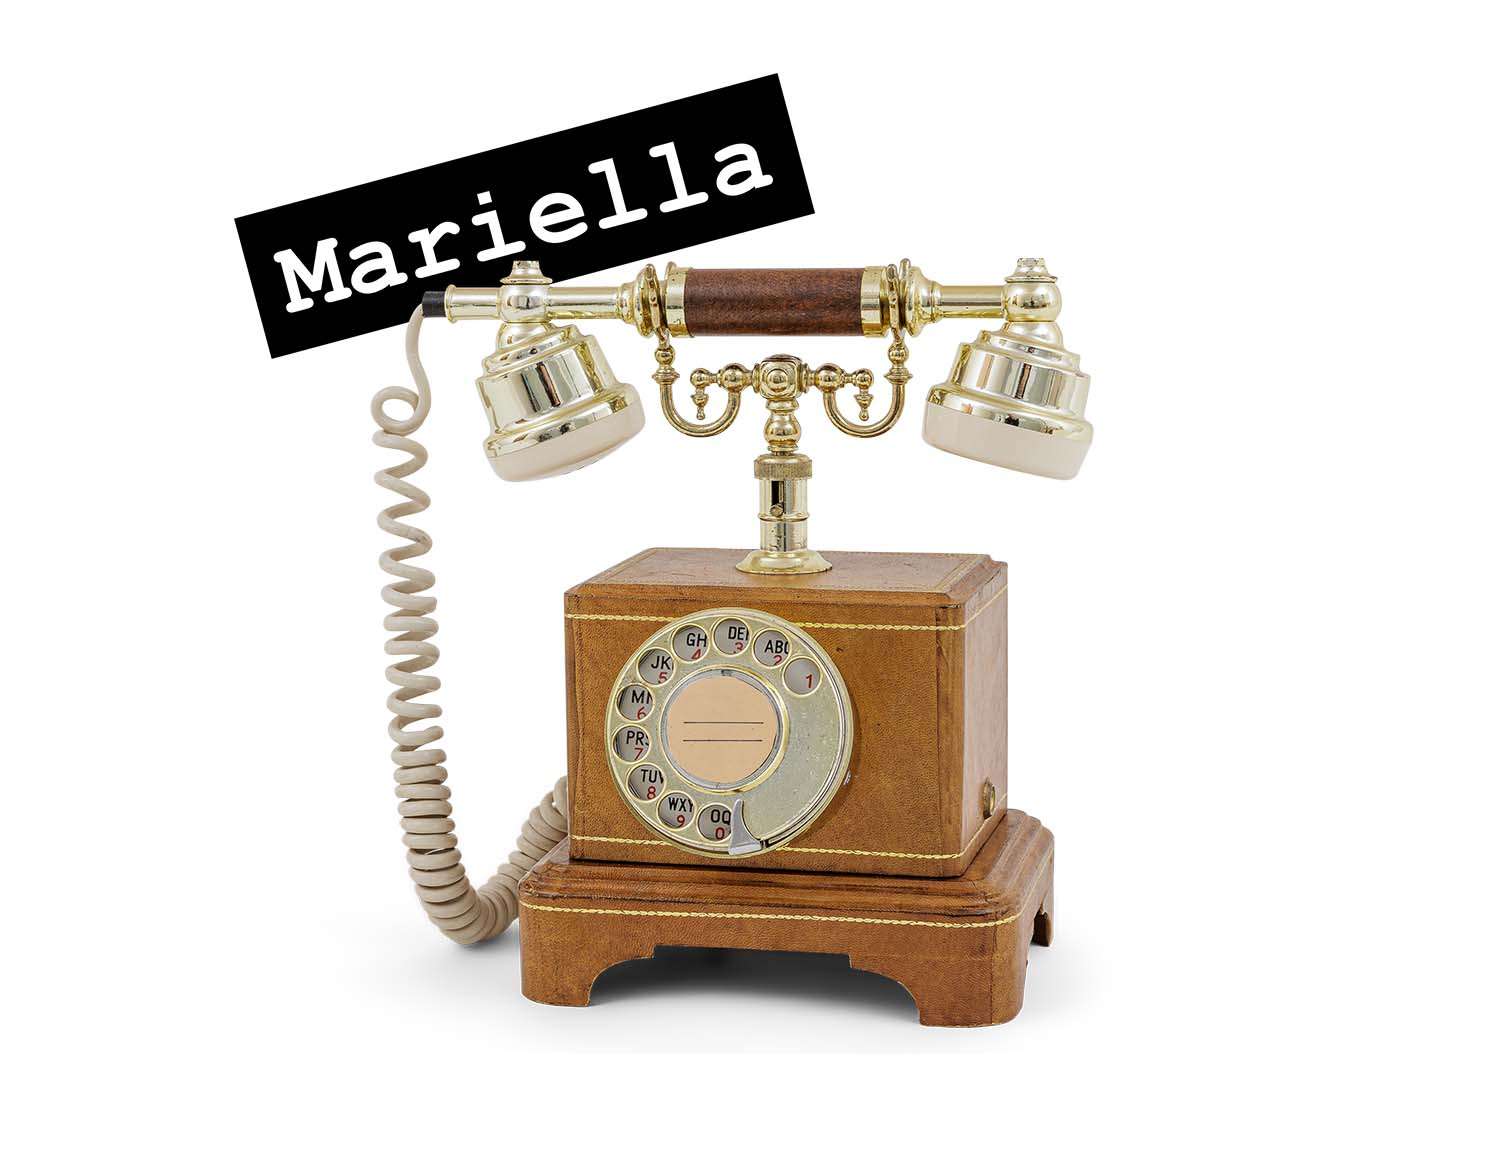 Das Audio Gästebuch Mariella von telefon-mieten.de